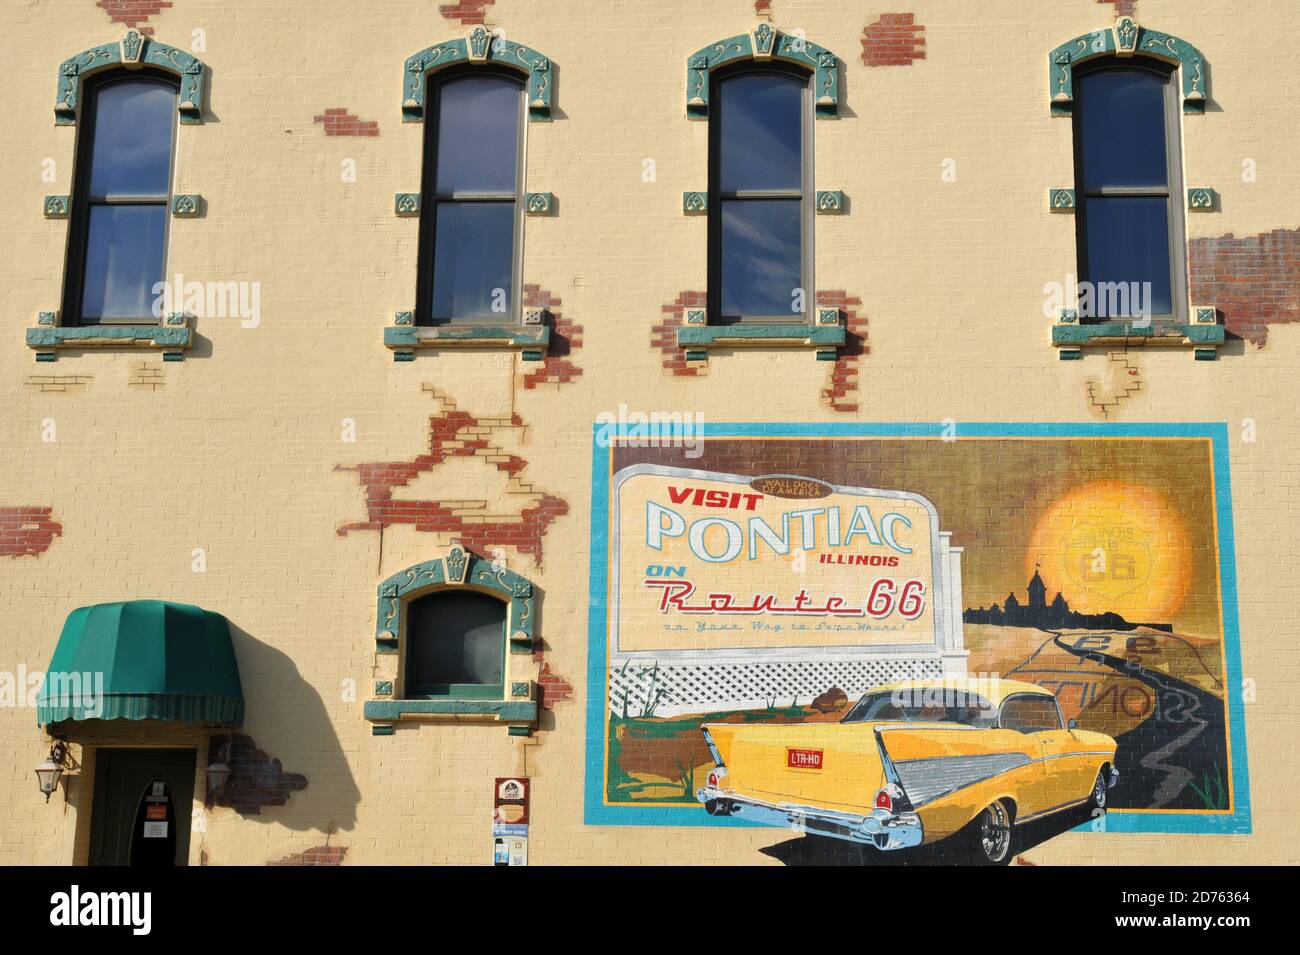 Un murale turistico vecchio stile decora il lato di un edificio storico nella città Route 66 di Pontiac, Illinois. Foto Stock